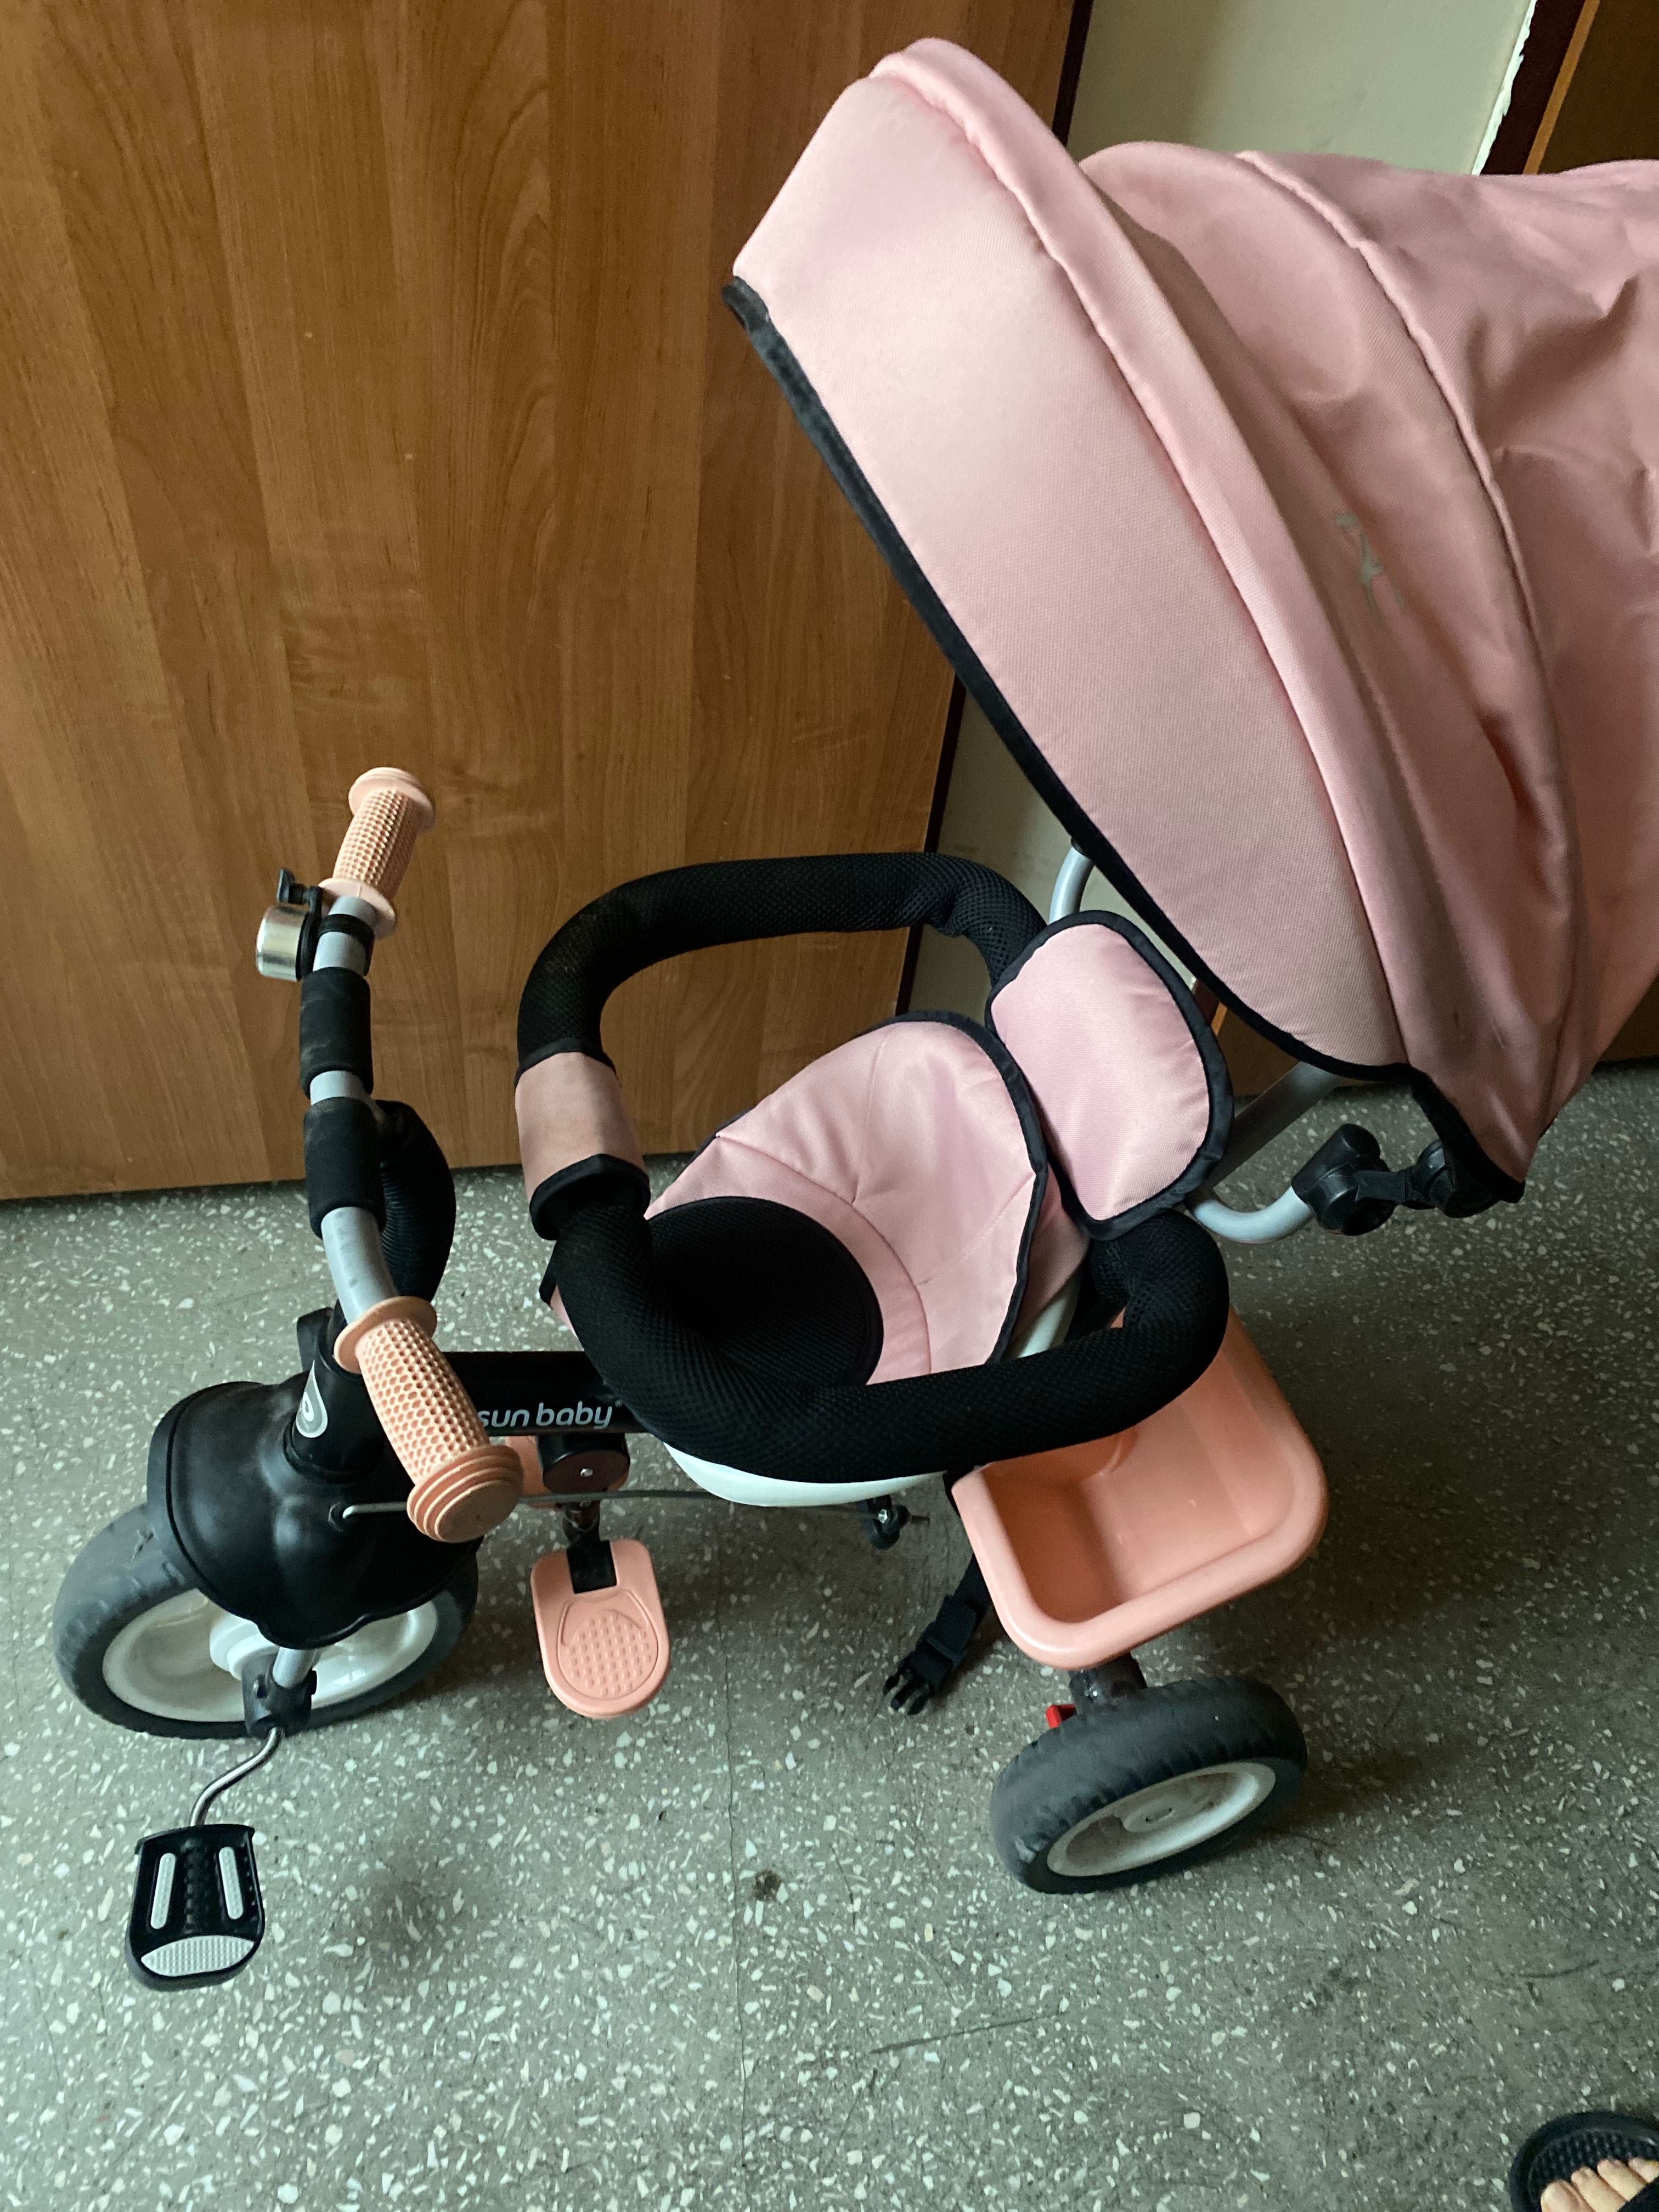 Rowerek trójkołowy Sun Baby w kolorze różowym  12-36 miesięcy